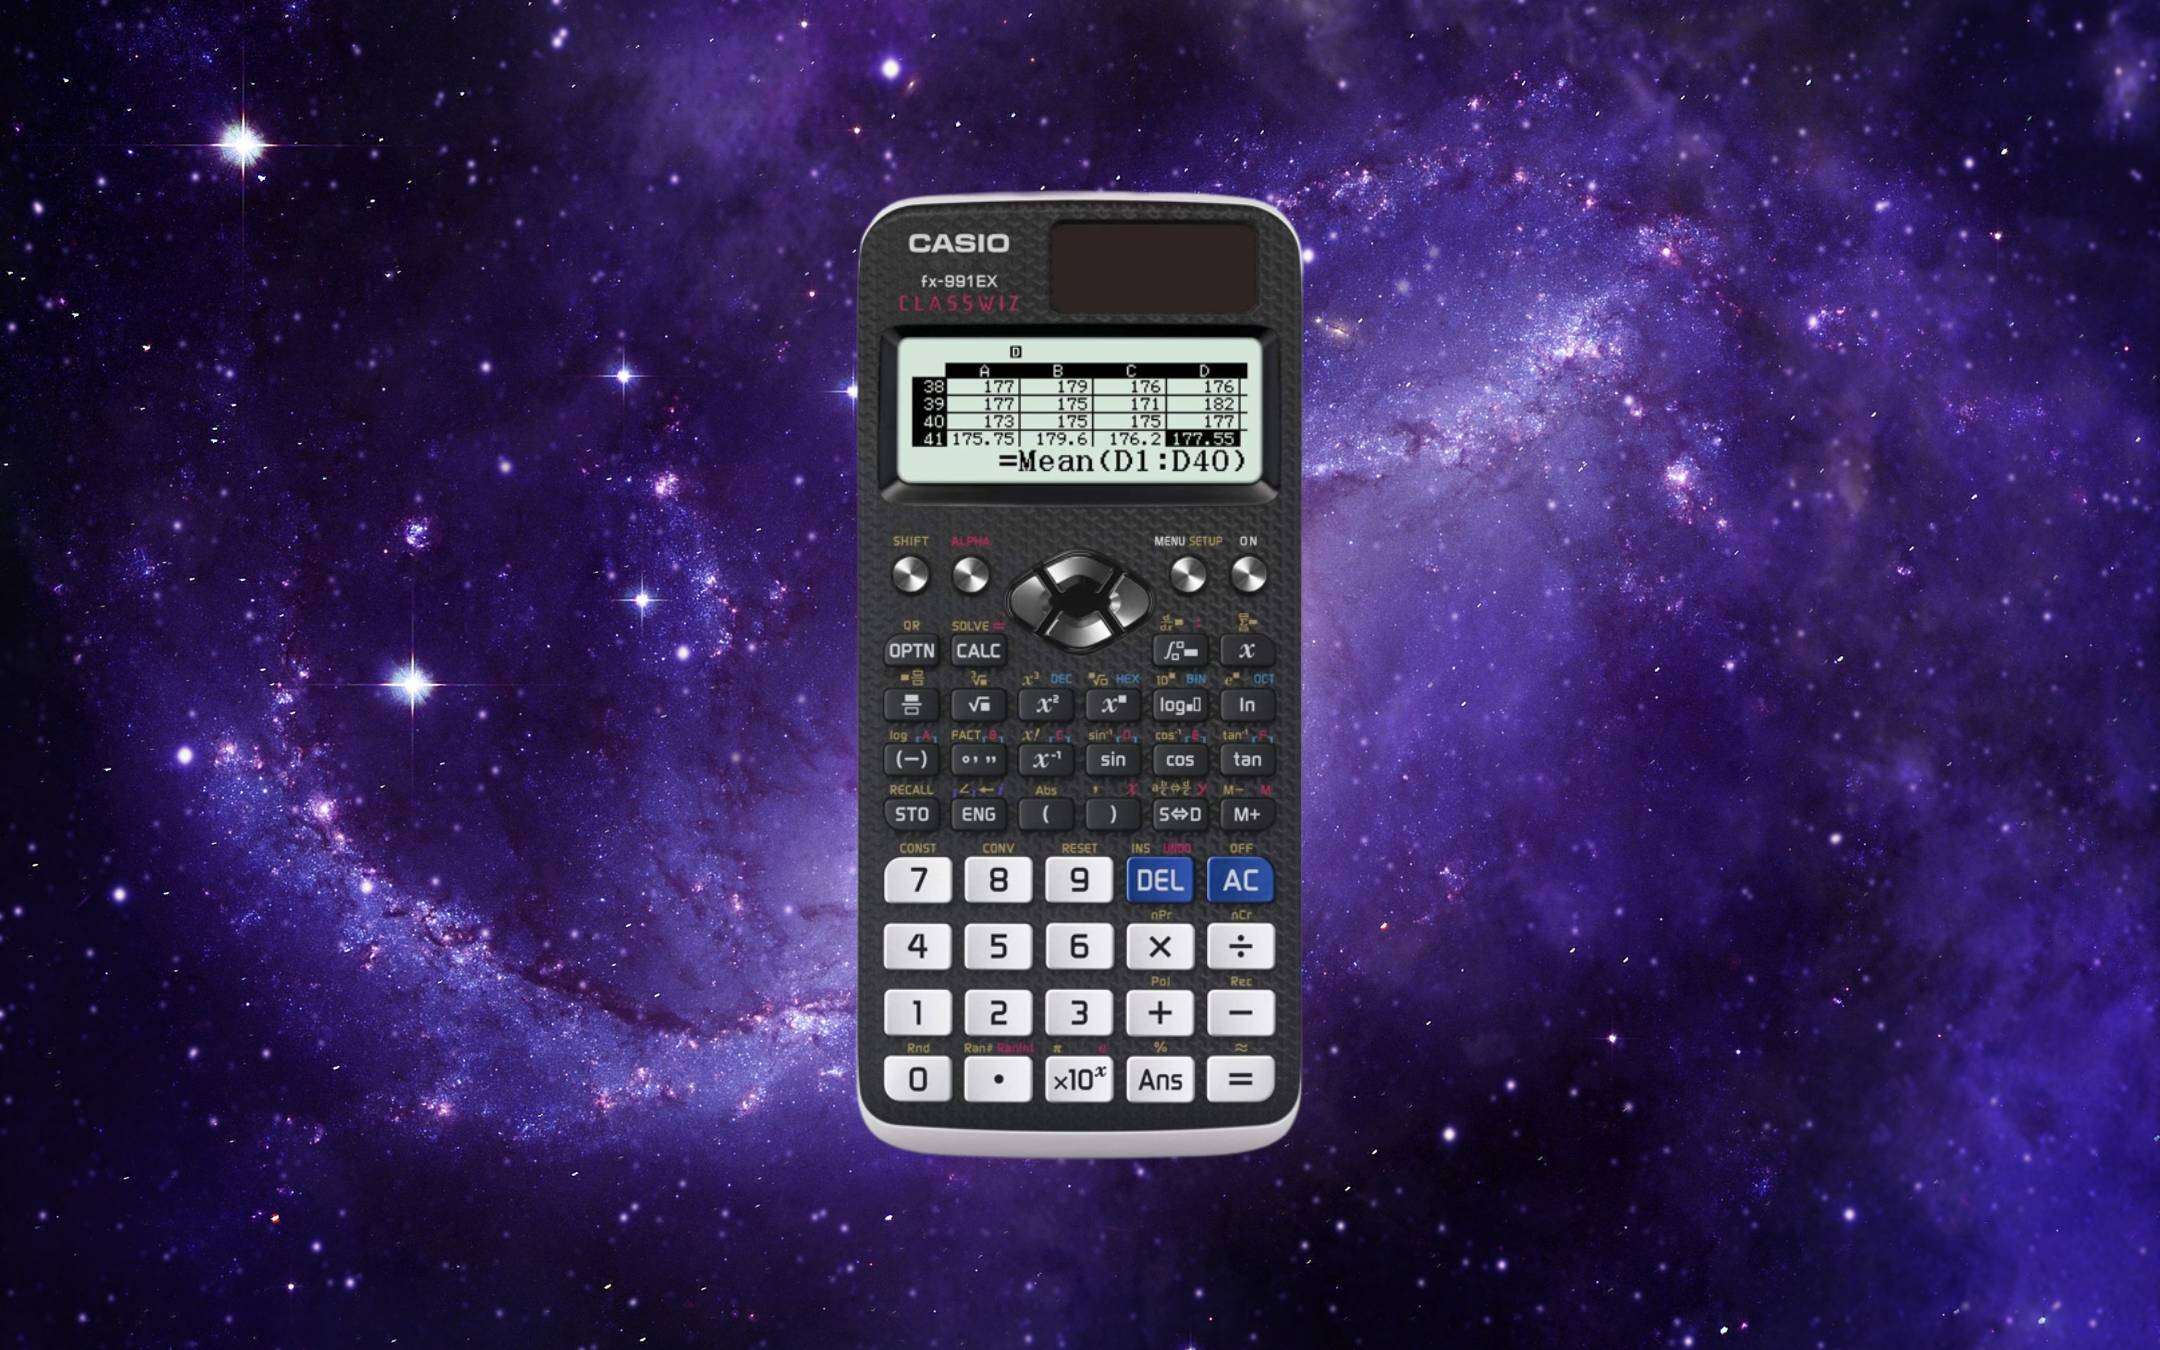 Calcolatrici scientifiche in offerta: la Casio Fx-991Ex scende